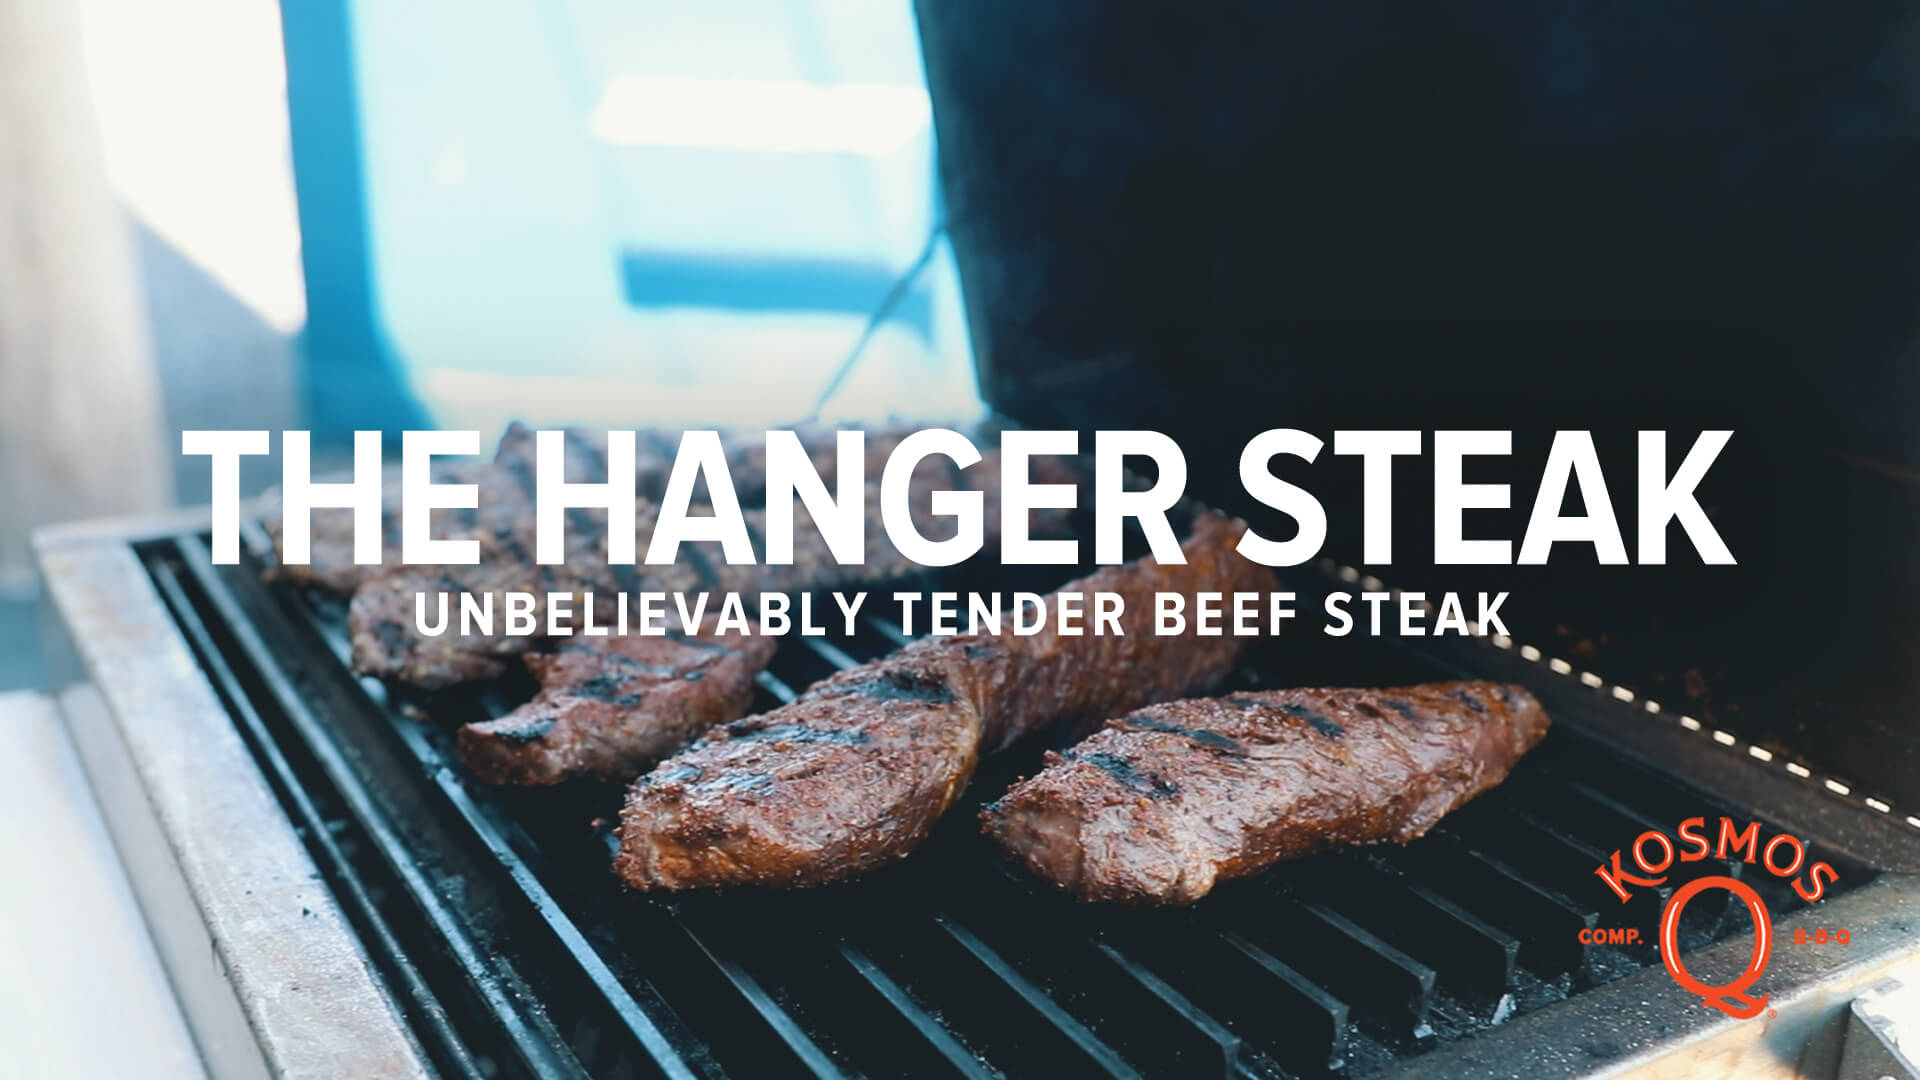 The Hanger Steak